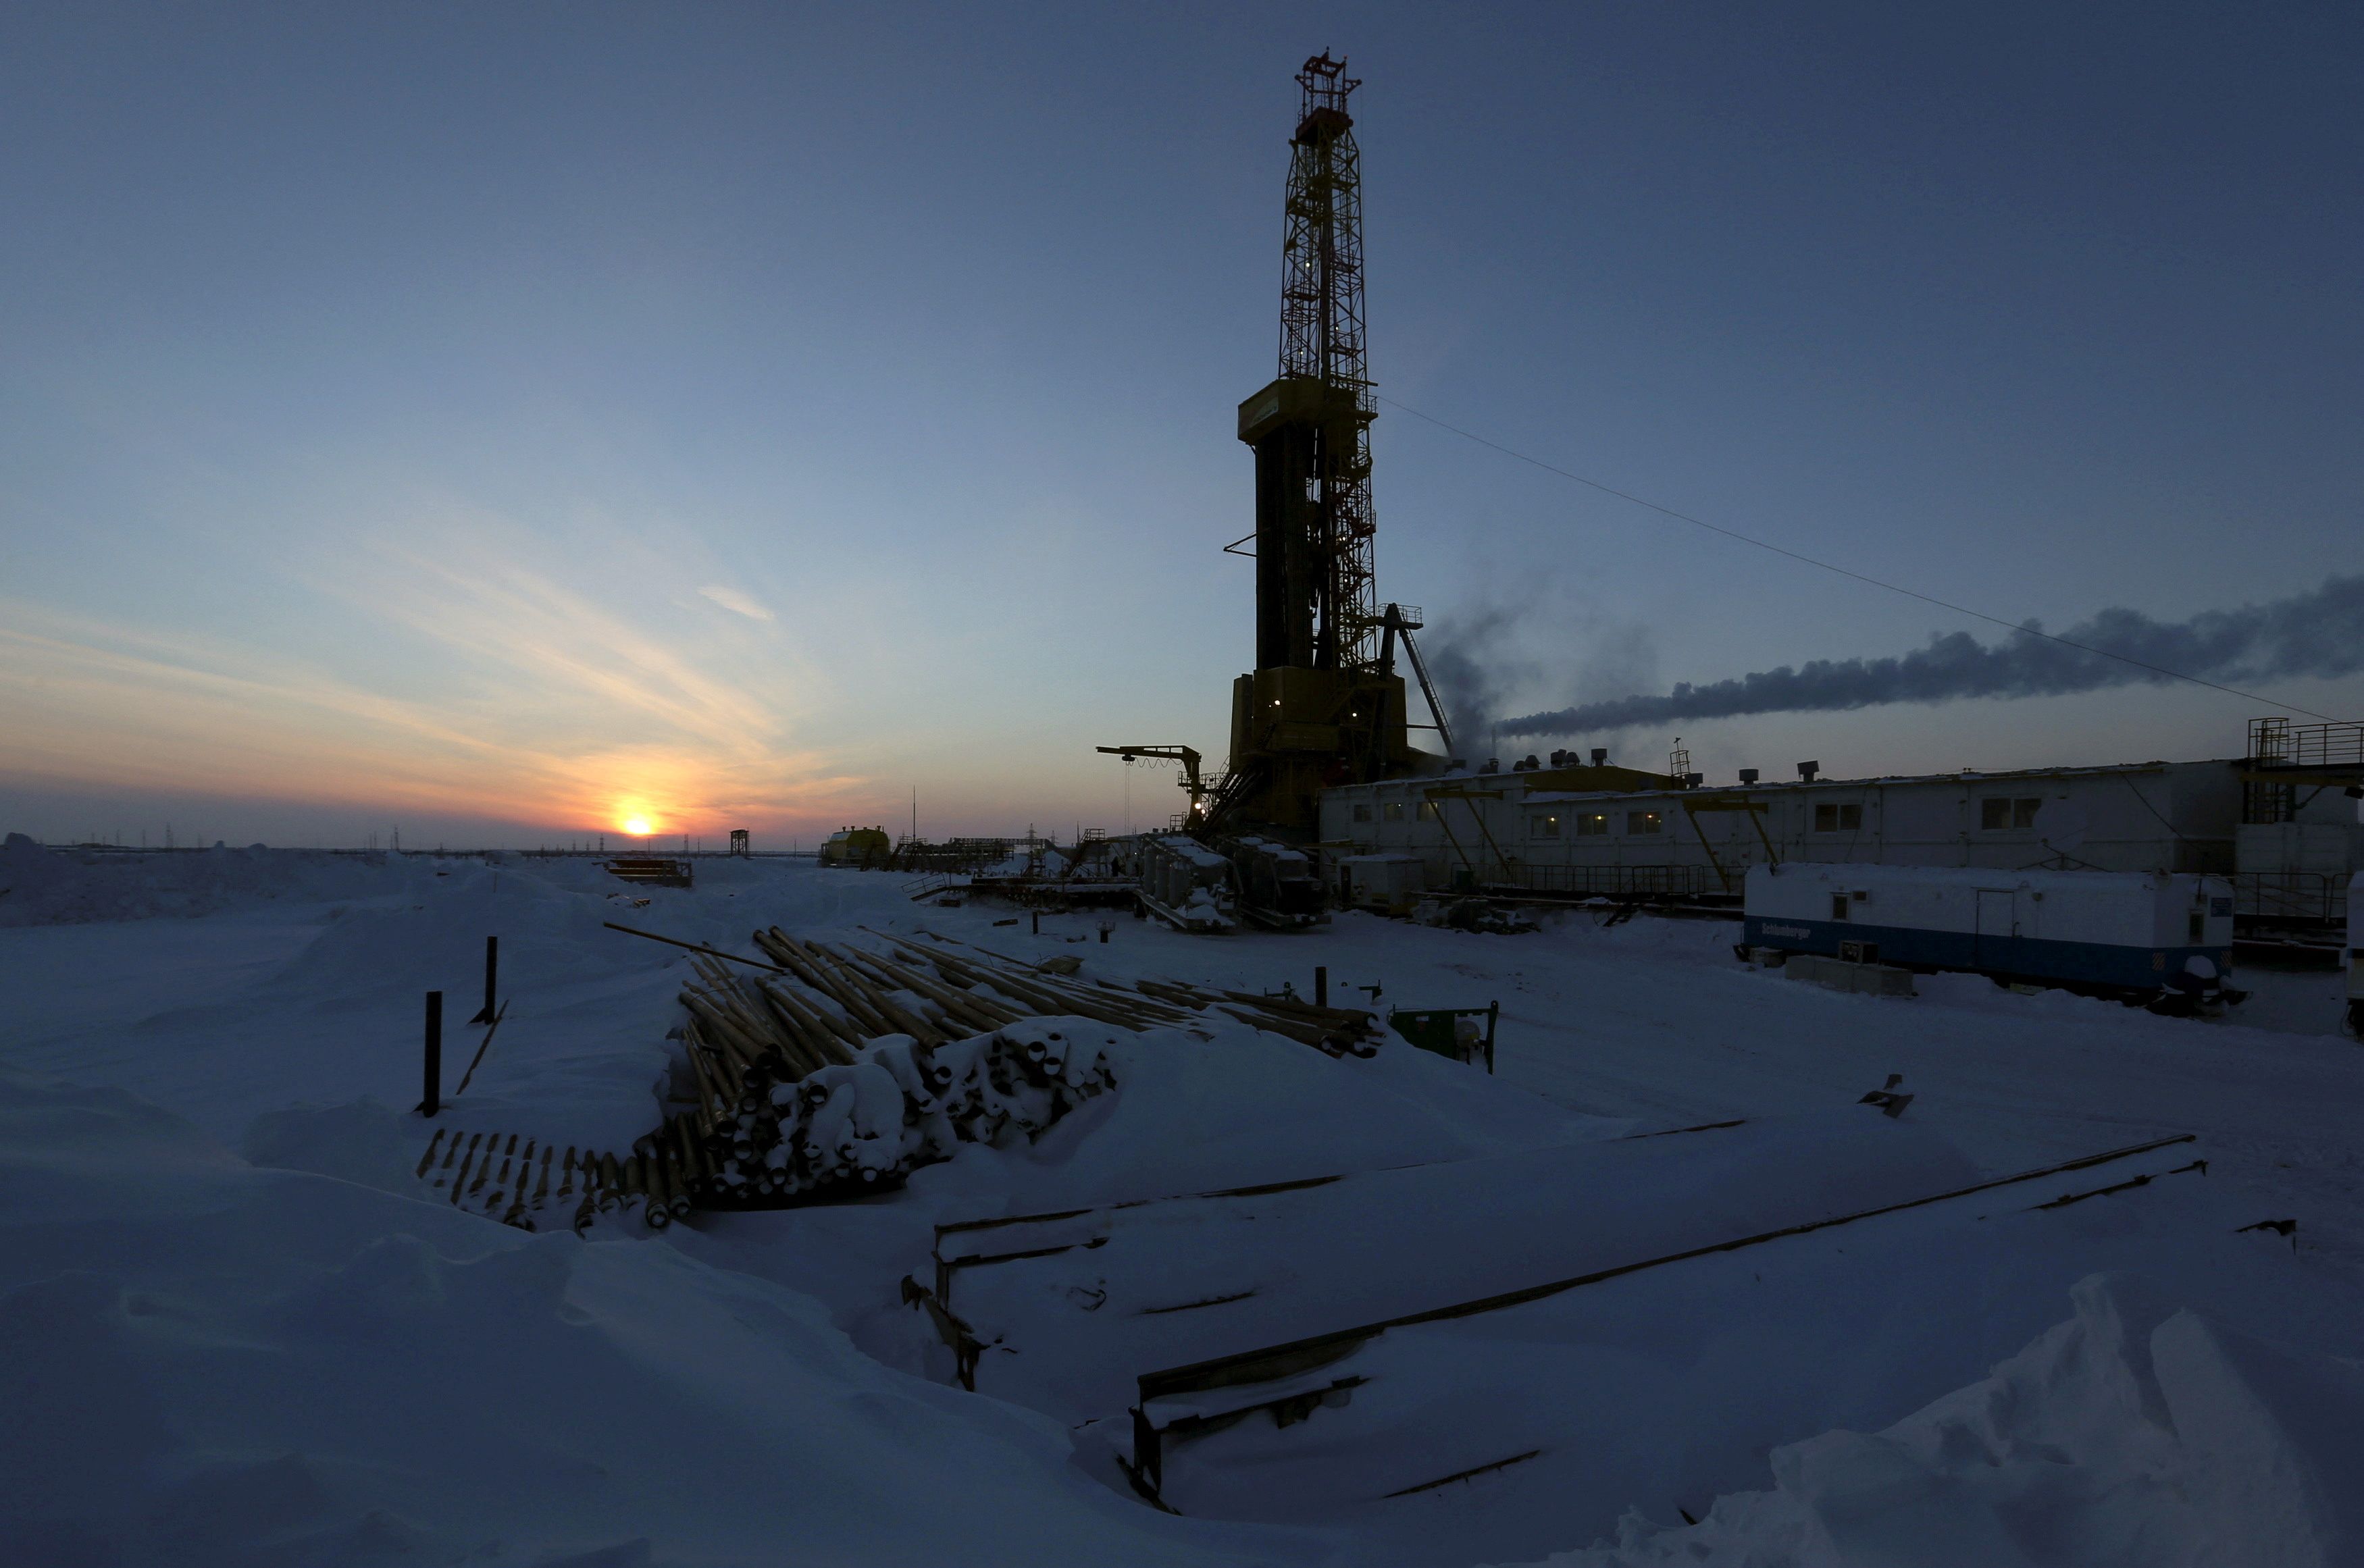 View shows oil derrick at Vankorskoye oil field owned by Rosneft north of Krasnoyarsk